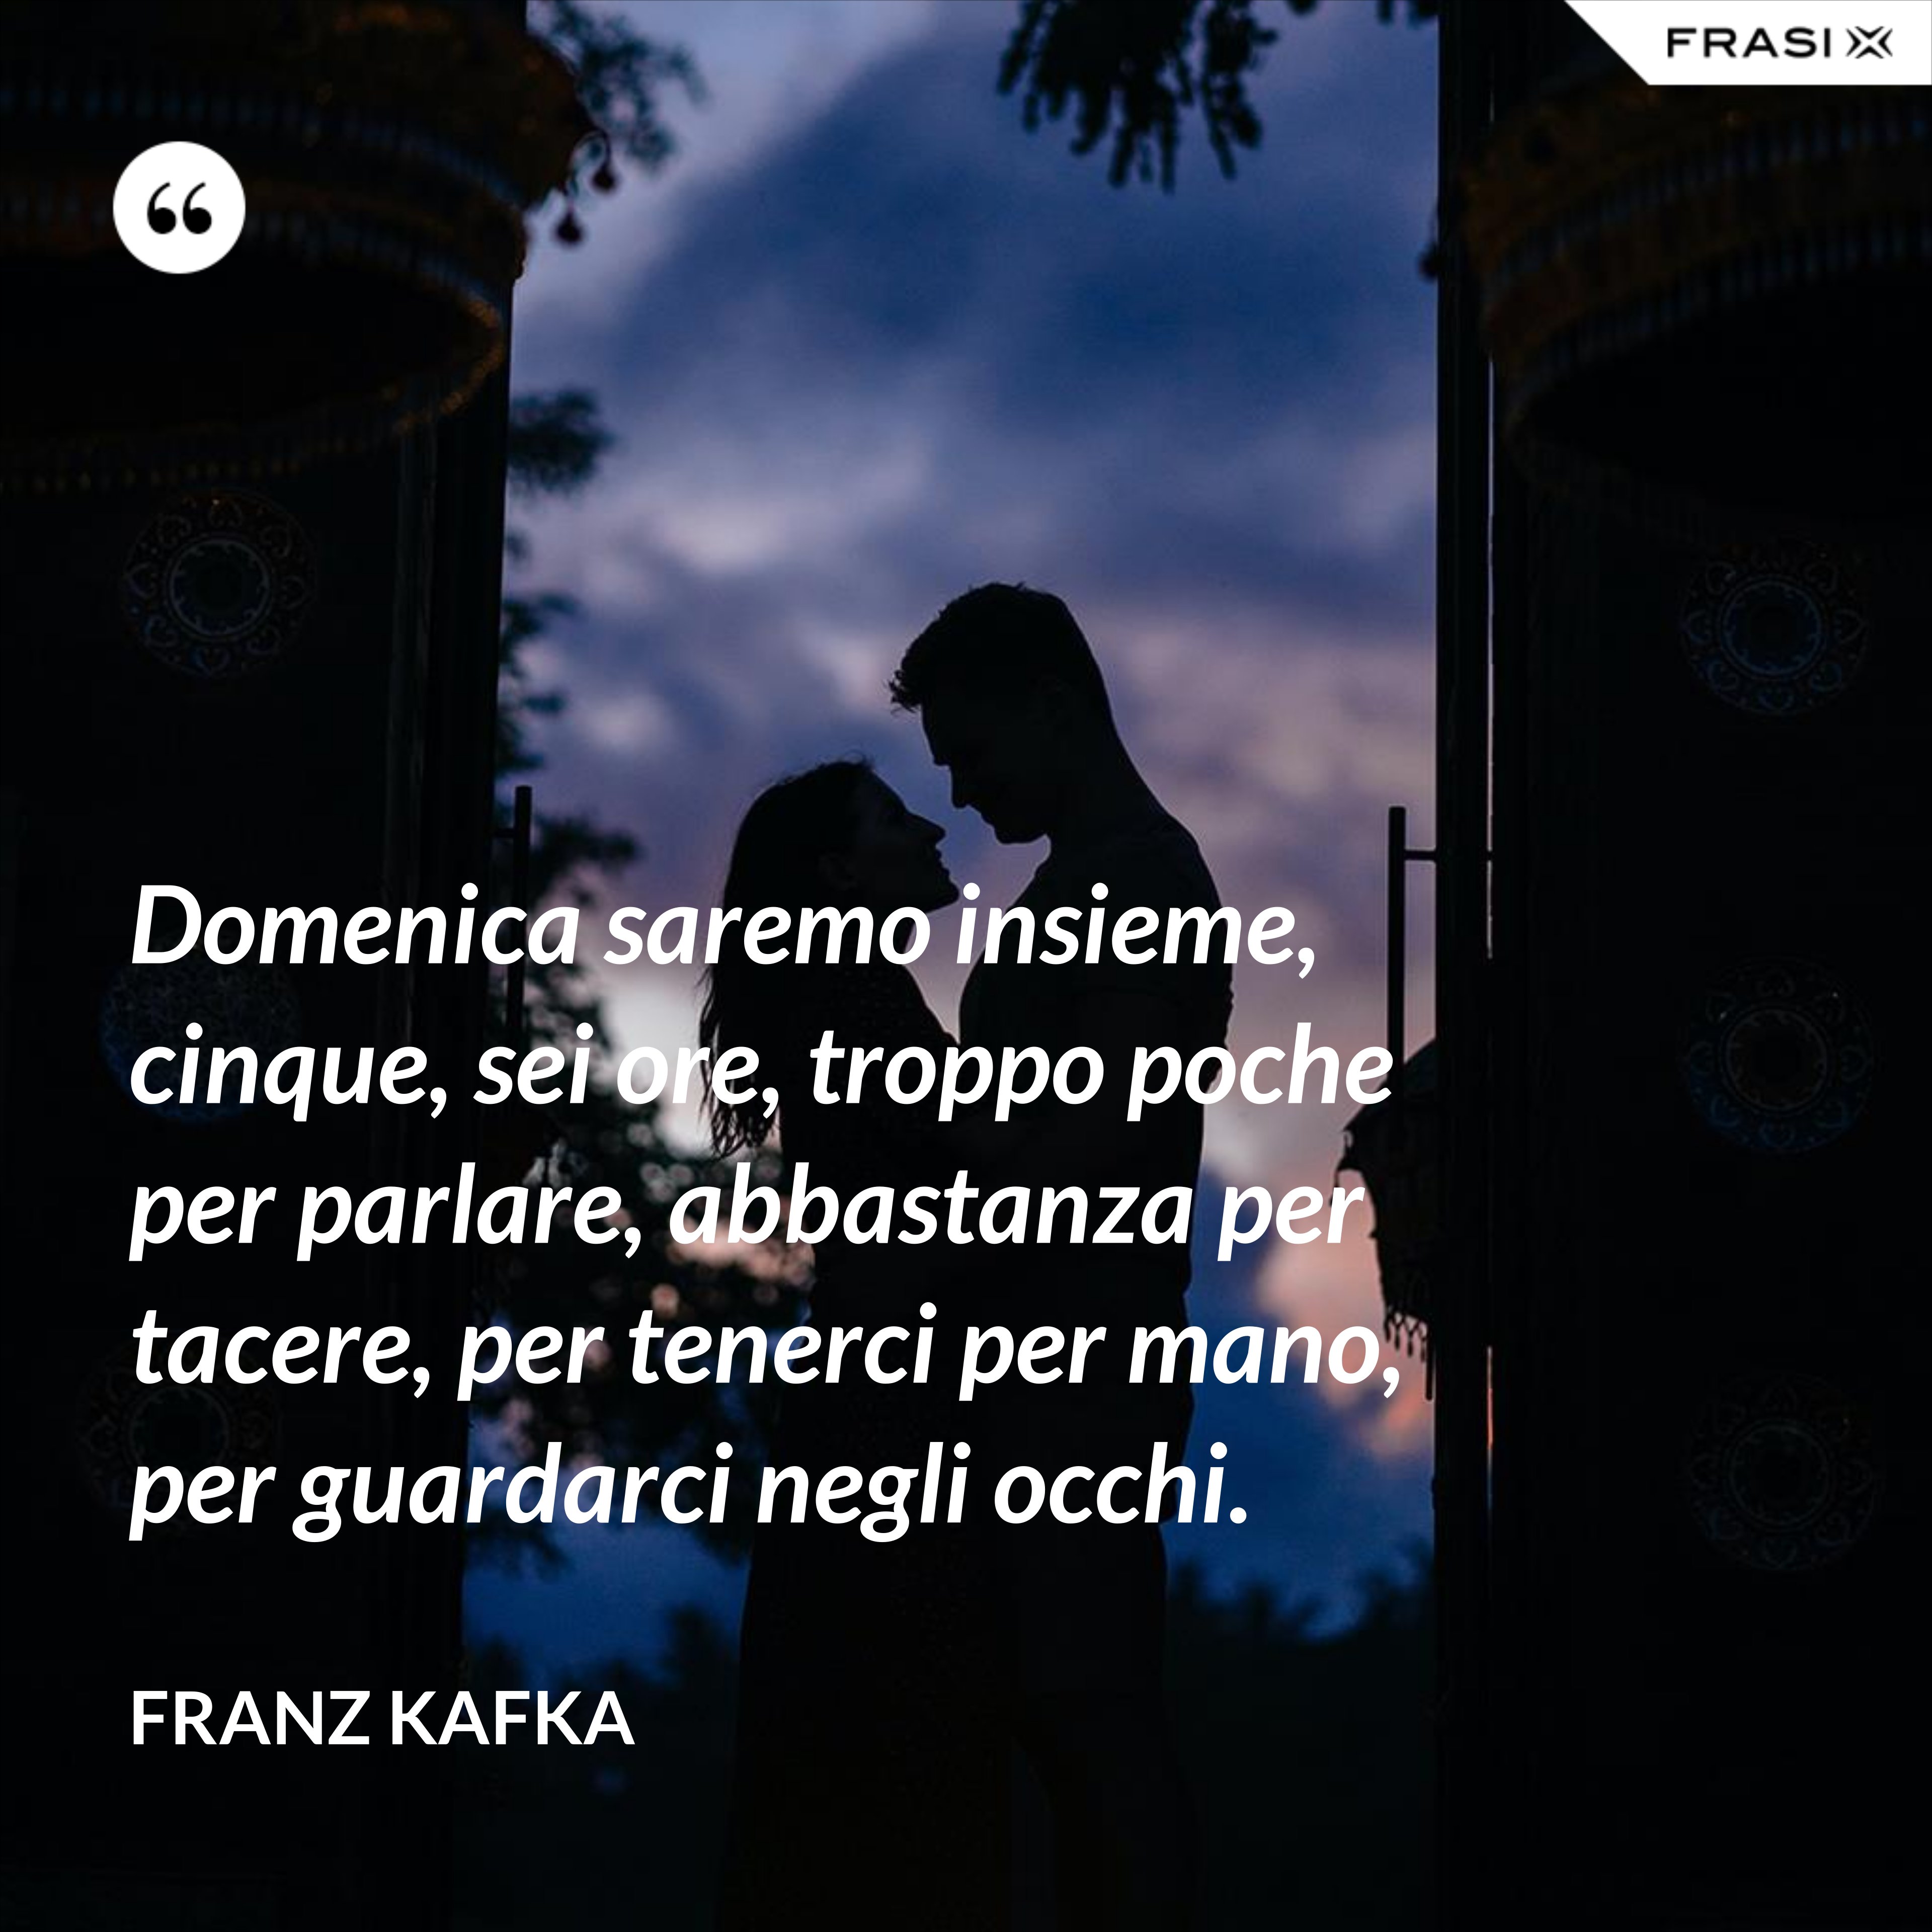 Domenica saremo insieme, cinque, sei ore, troppo poche per parlare, abbastanza per tacere, per tenerci per mano, per guardarci negli occhi. - Franz Kafka